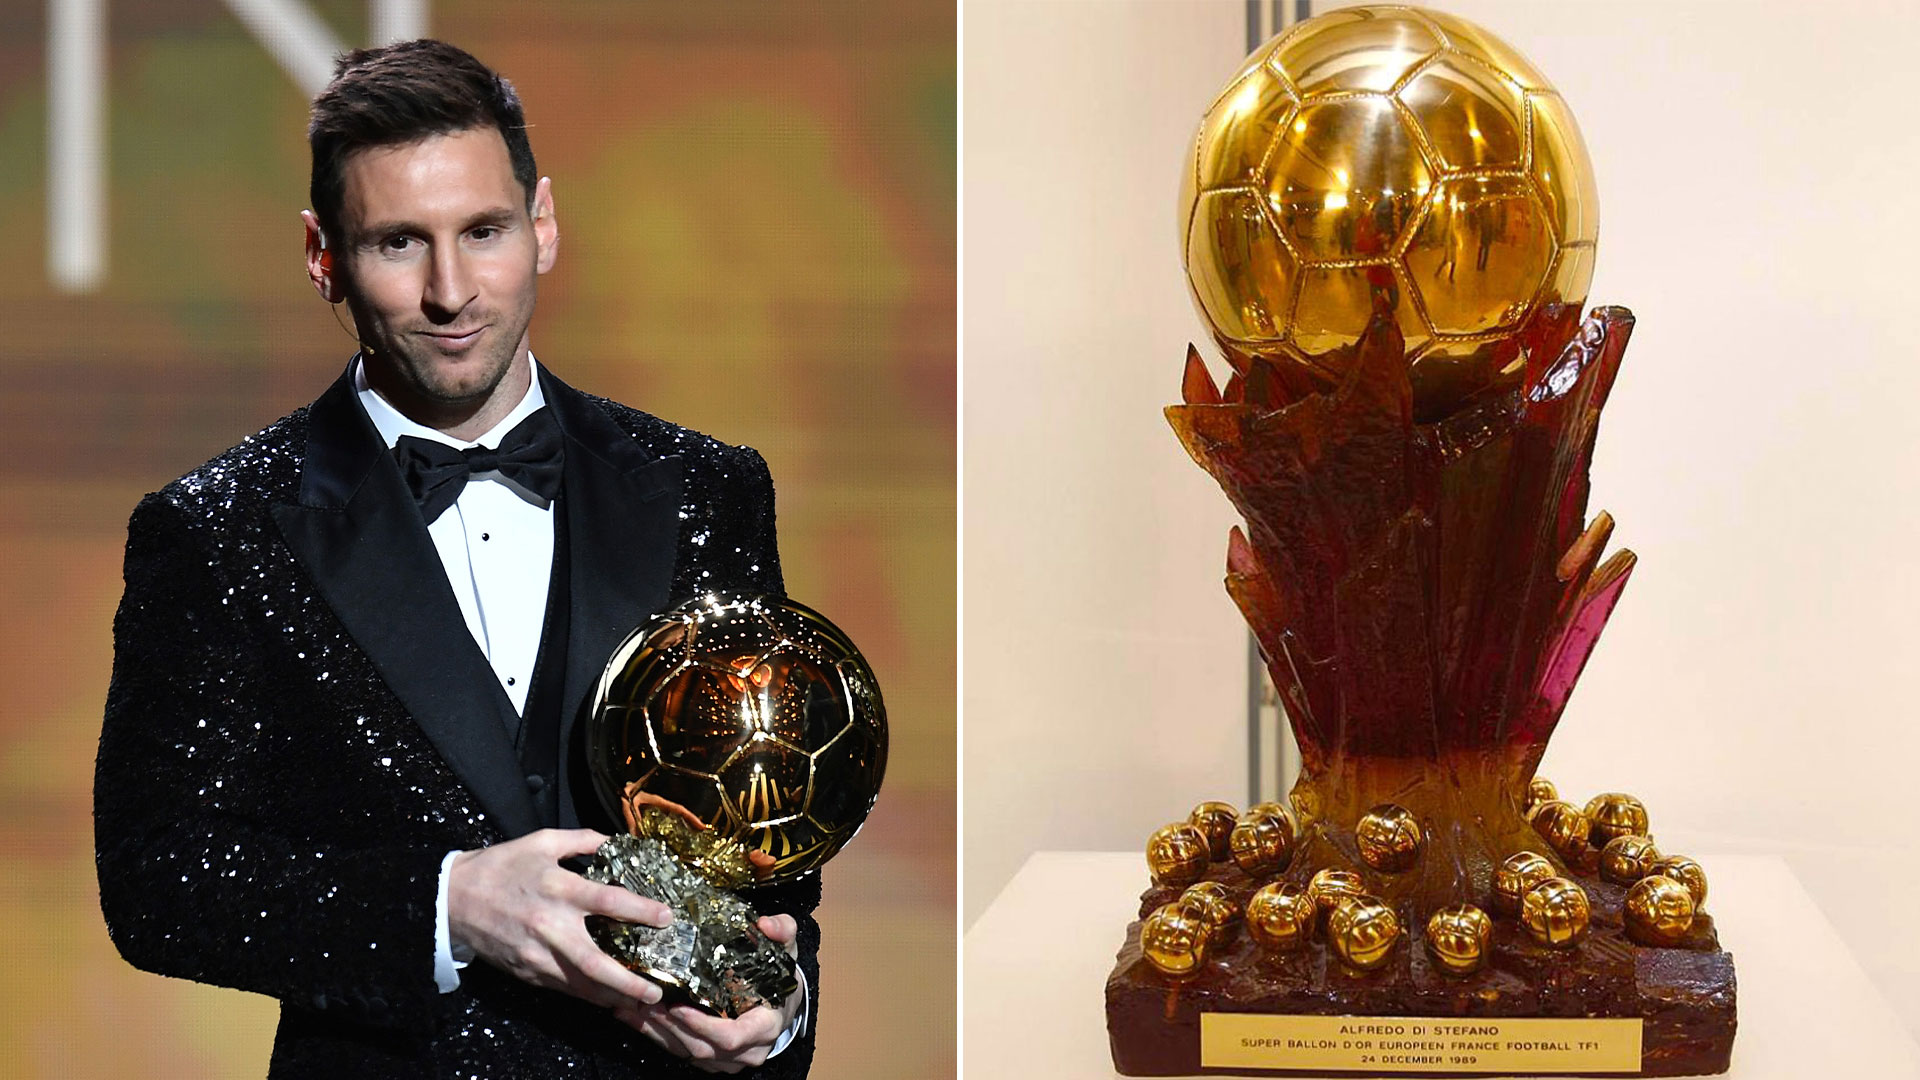 El enorme Mundial que jugó Messi abrió el debate, ¿debe ganar el Súper Balón de Oro?: quién es el único futbolista que lo recibió en la historia  